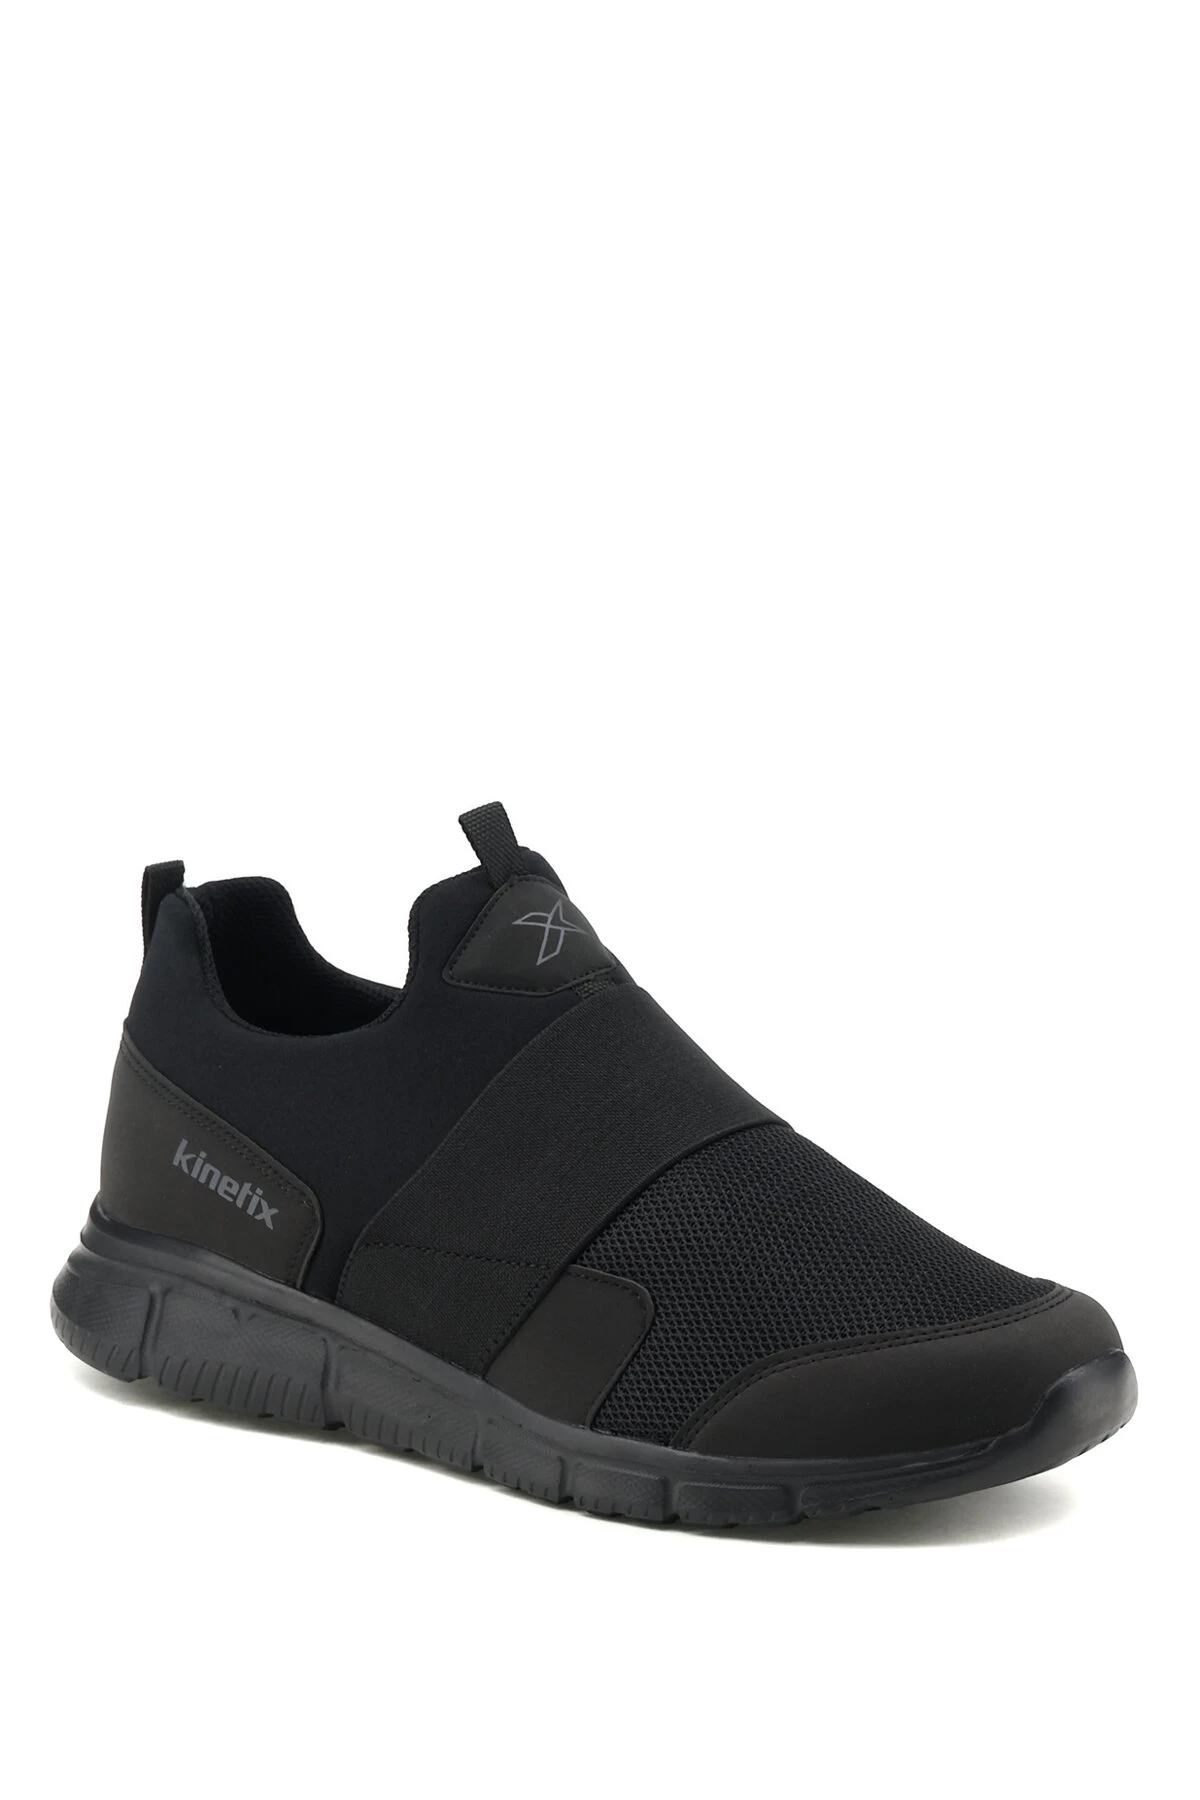 Kinetix BELUR zapatos cómodos para hombre, zapatillas negras sin cordones,  con patrón sólido, ligeras, marca de lujo, para verano, 2022| | - AliExpress